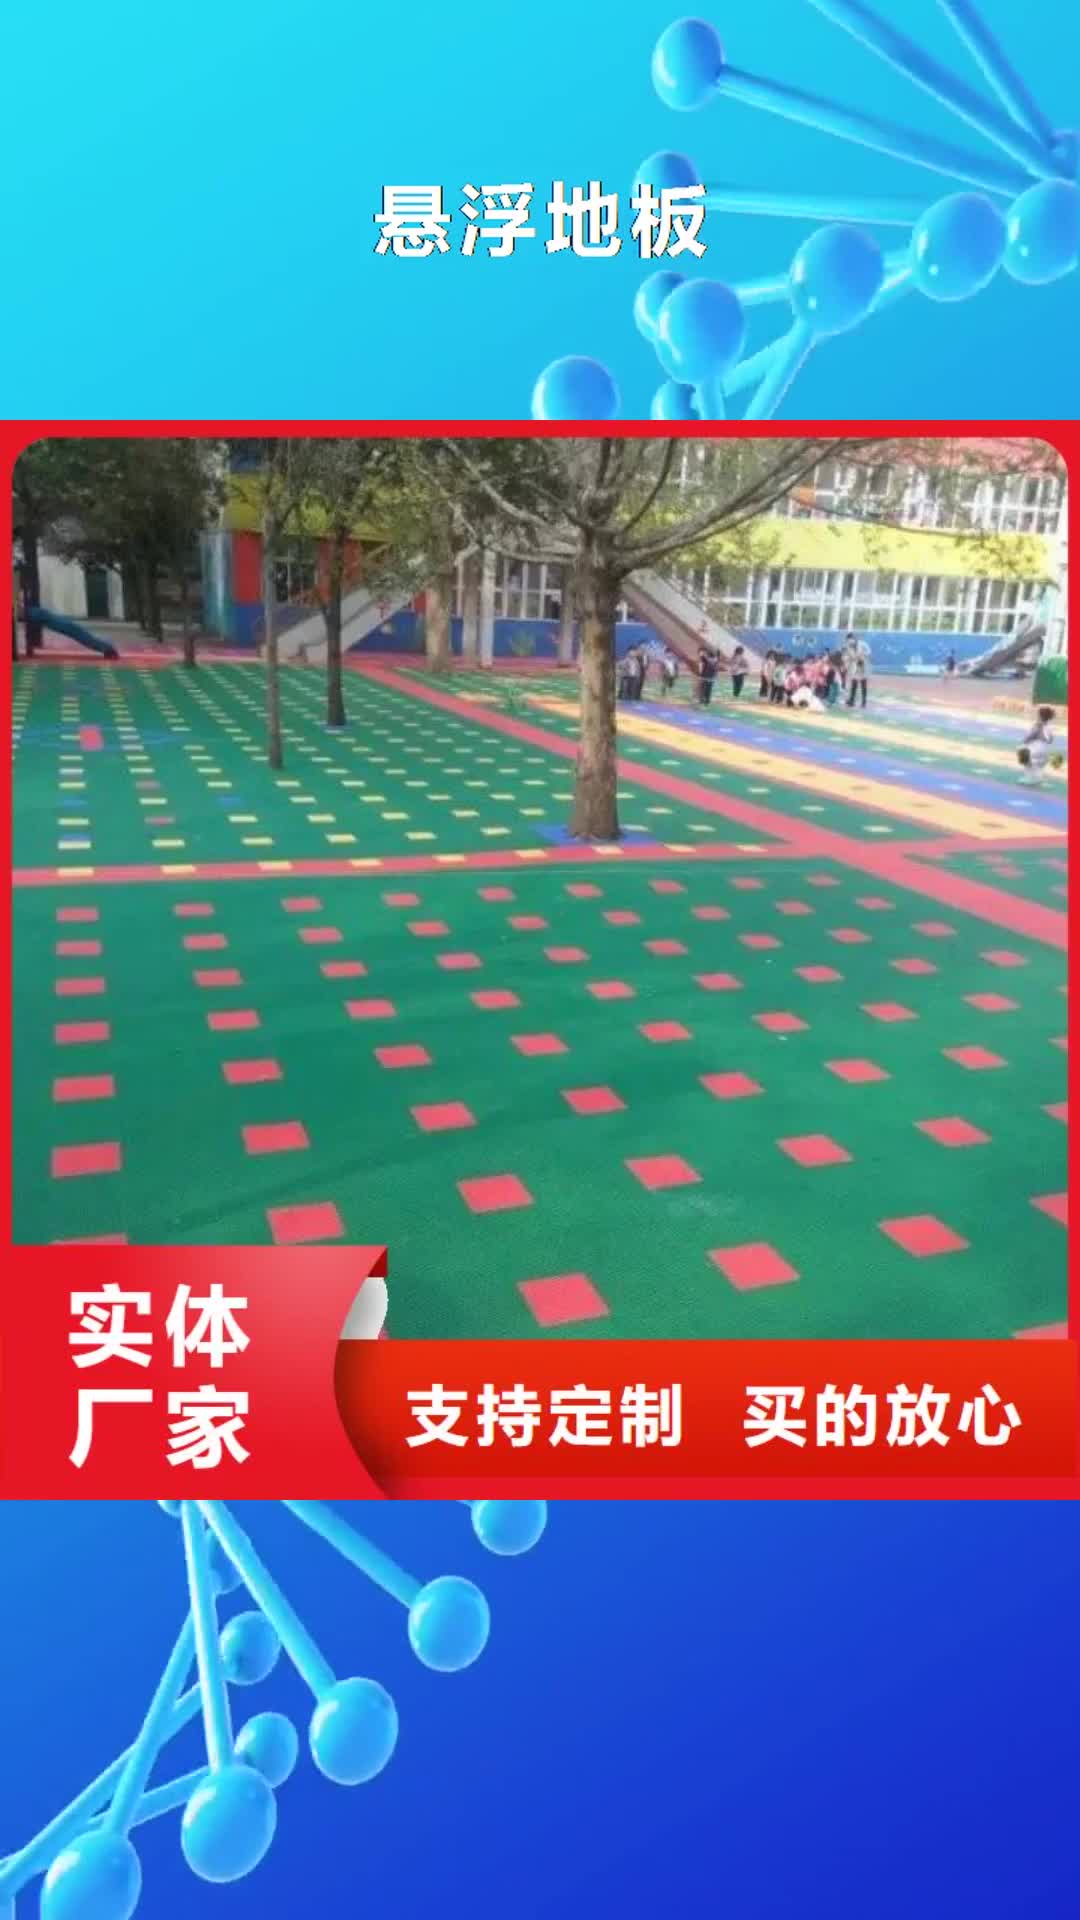 连云港 悬浮地板 【塑胶跑道】打造行业品质